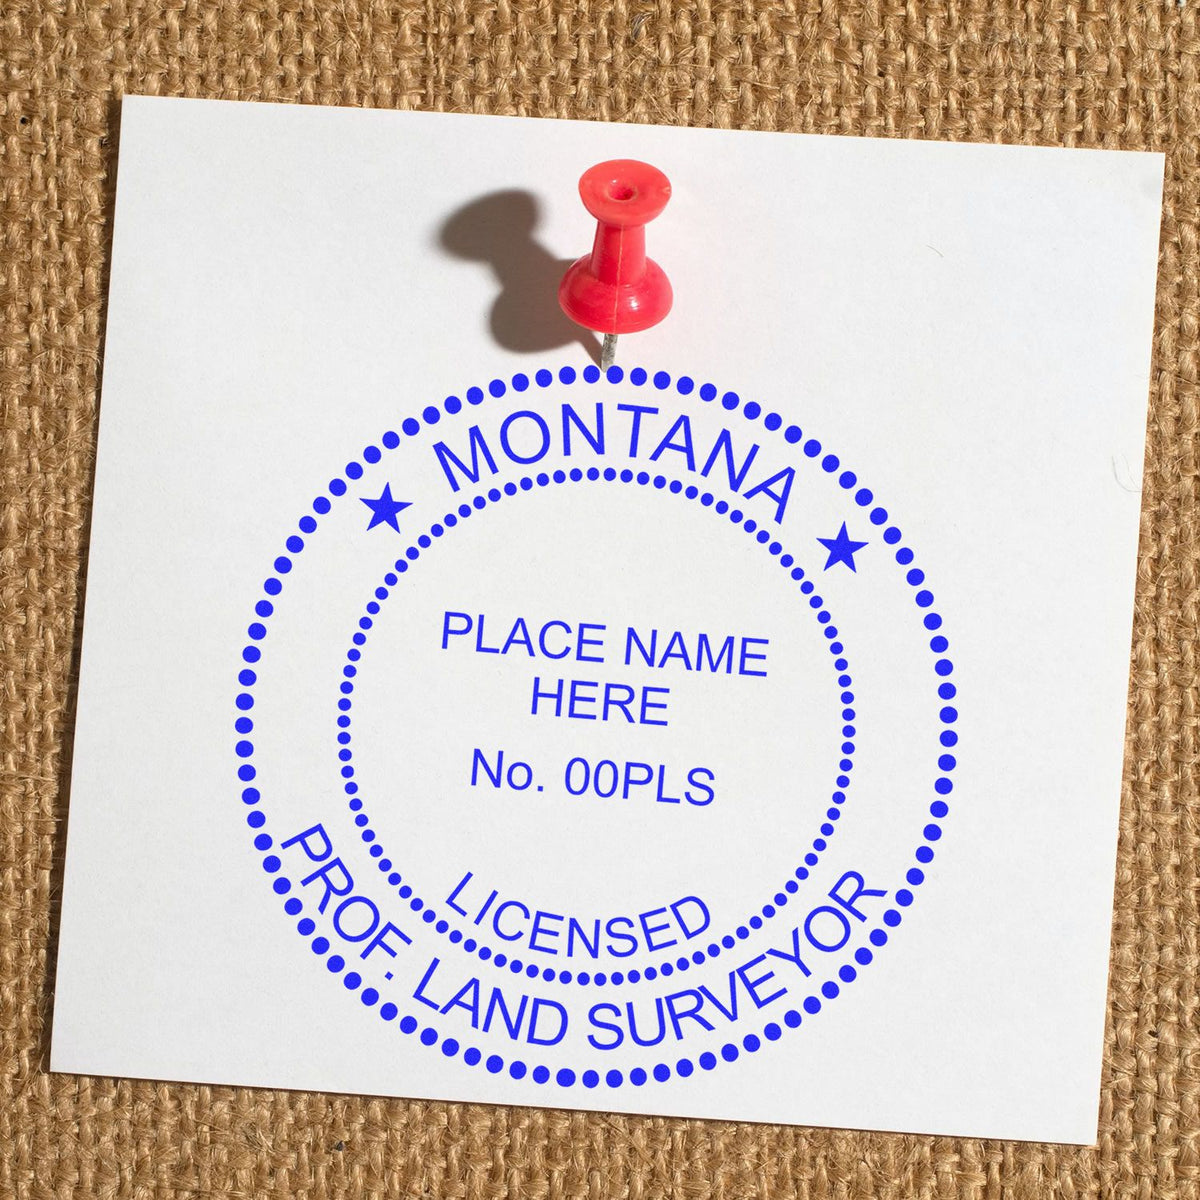 Montana Land Surveyor Seal Stamp In Use Photo